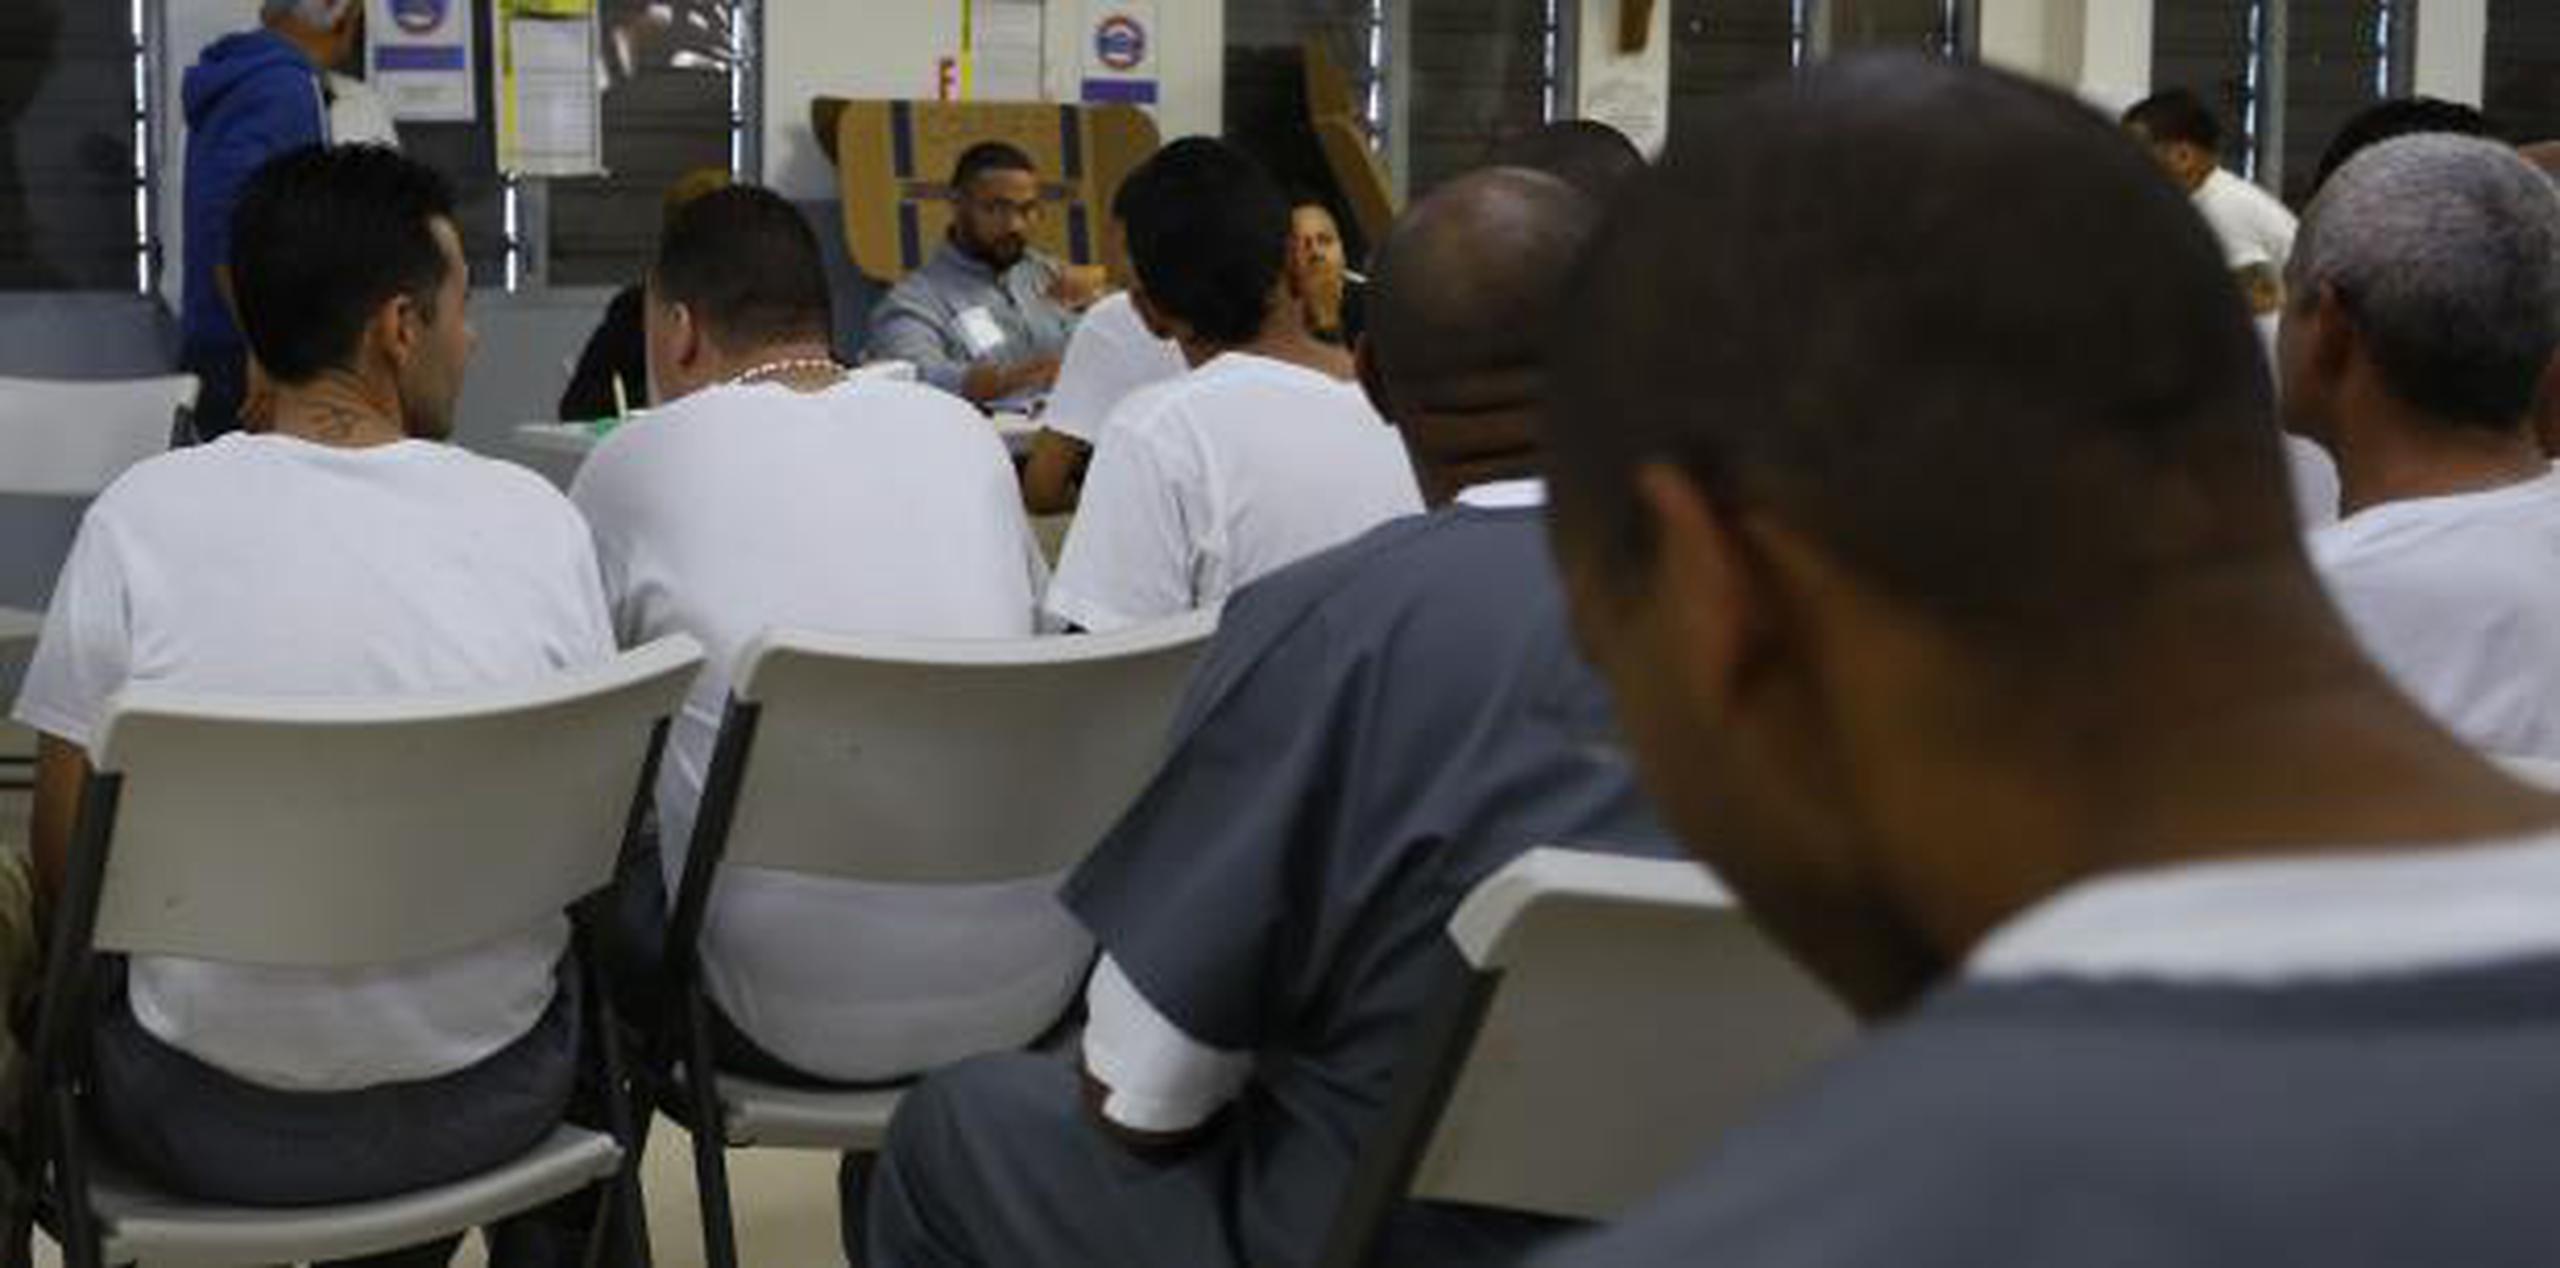 La Organización de las Naciones Unidas (ONU) urgió al Ejecutivo a terminar con una serie de medidas de seguridad en las prisiones con pandilleros por ser "crueles e inhumanas". (EFE)